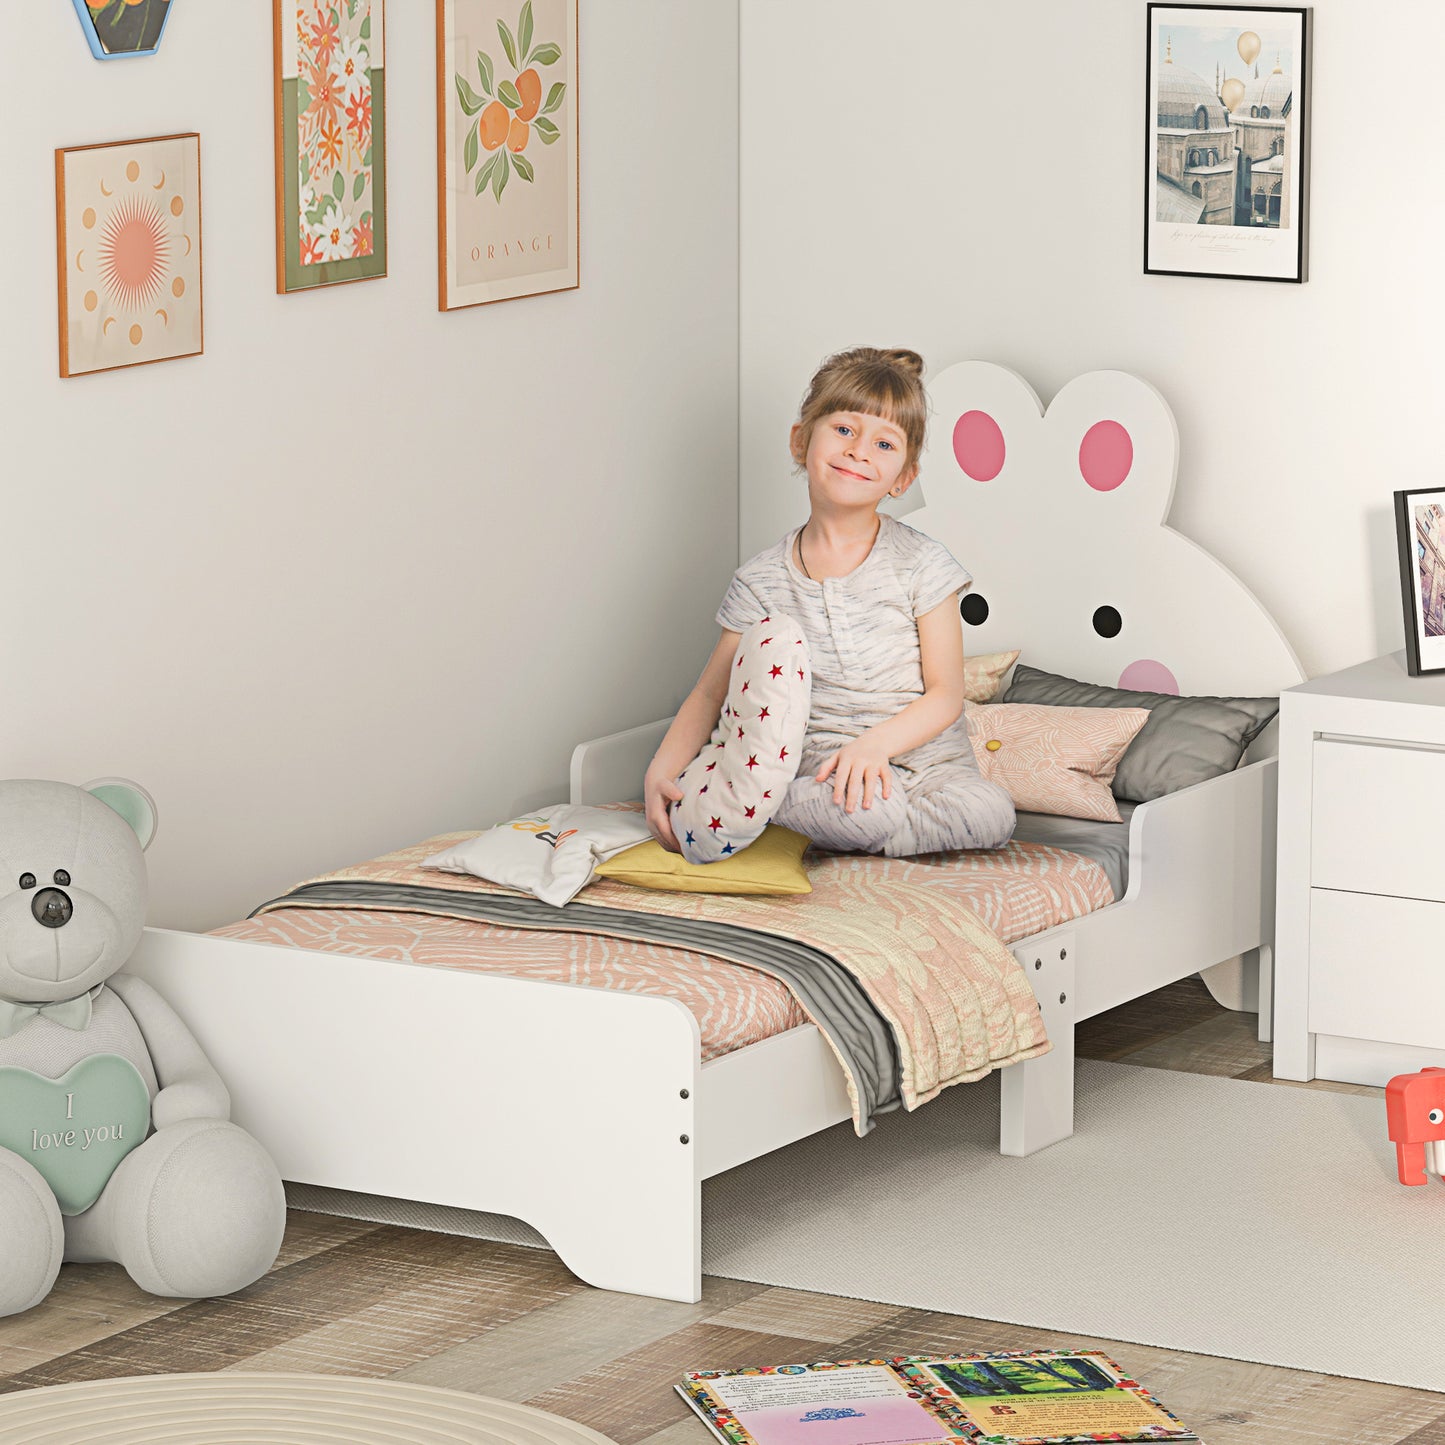 ZONEKIZ Toddler Bed Frame Rabbit Design White